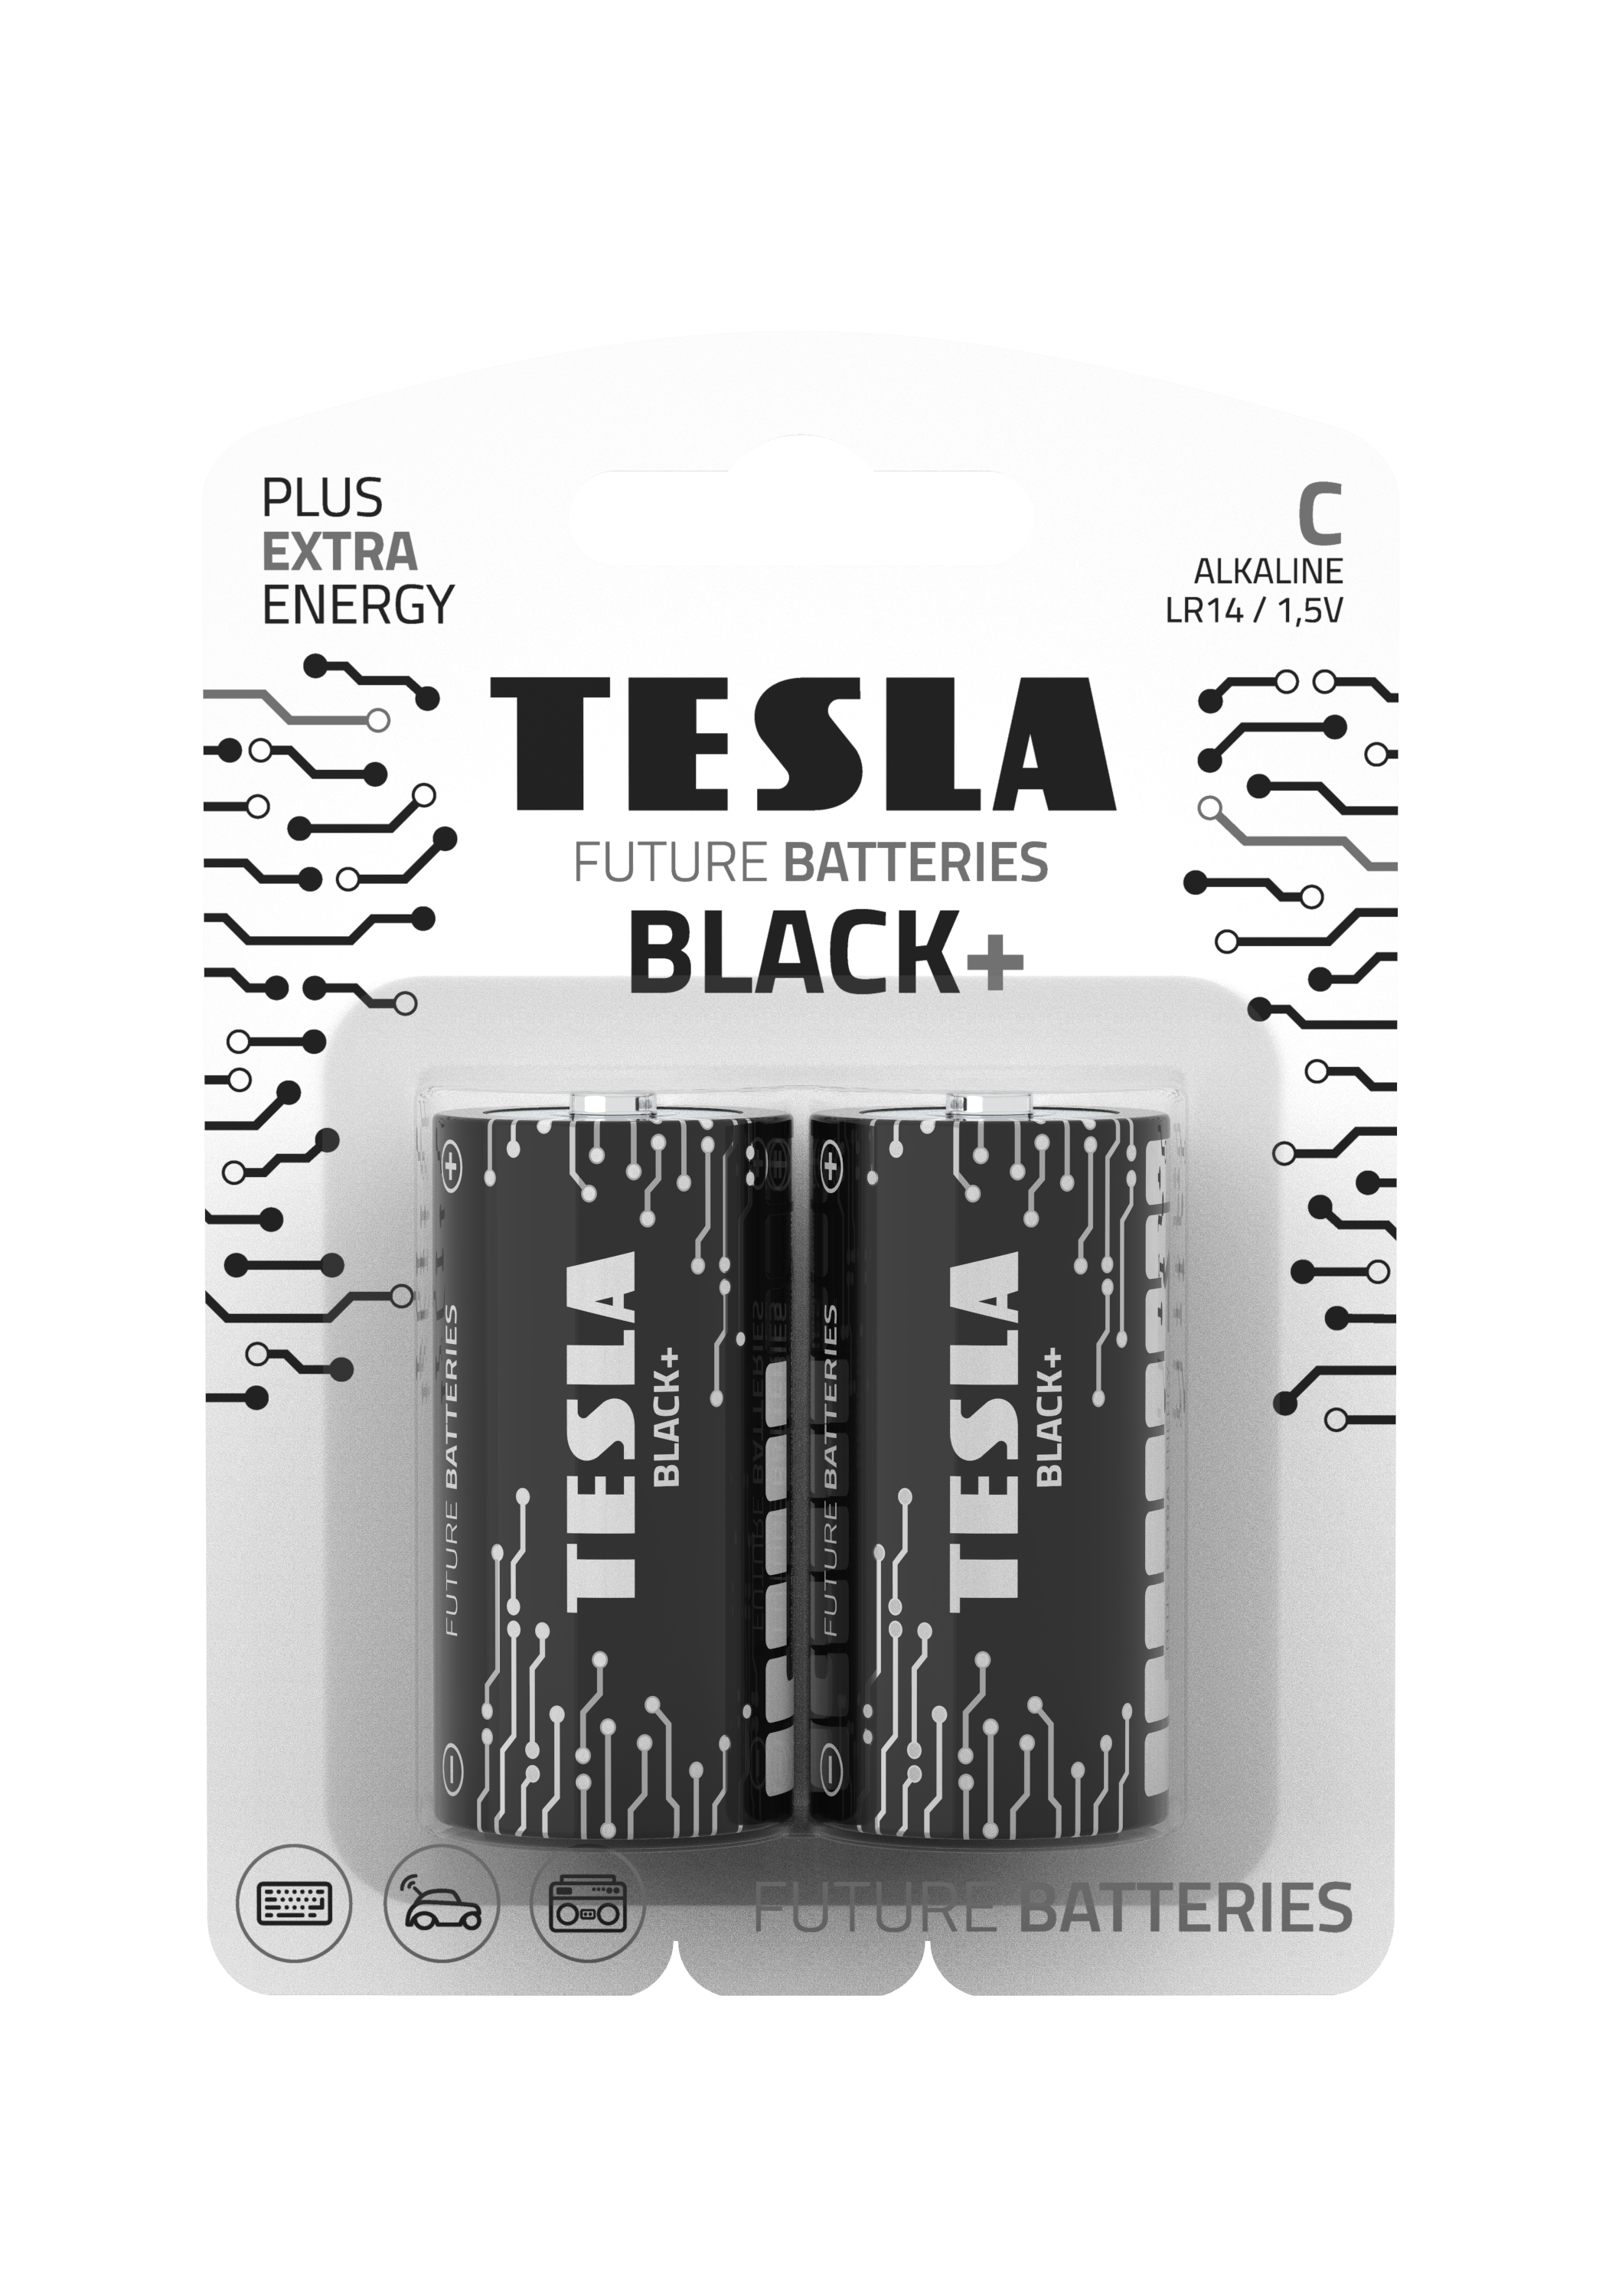 Tesla serie Black C pruhledne 1